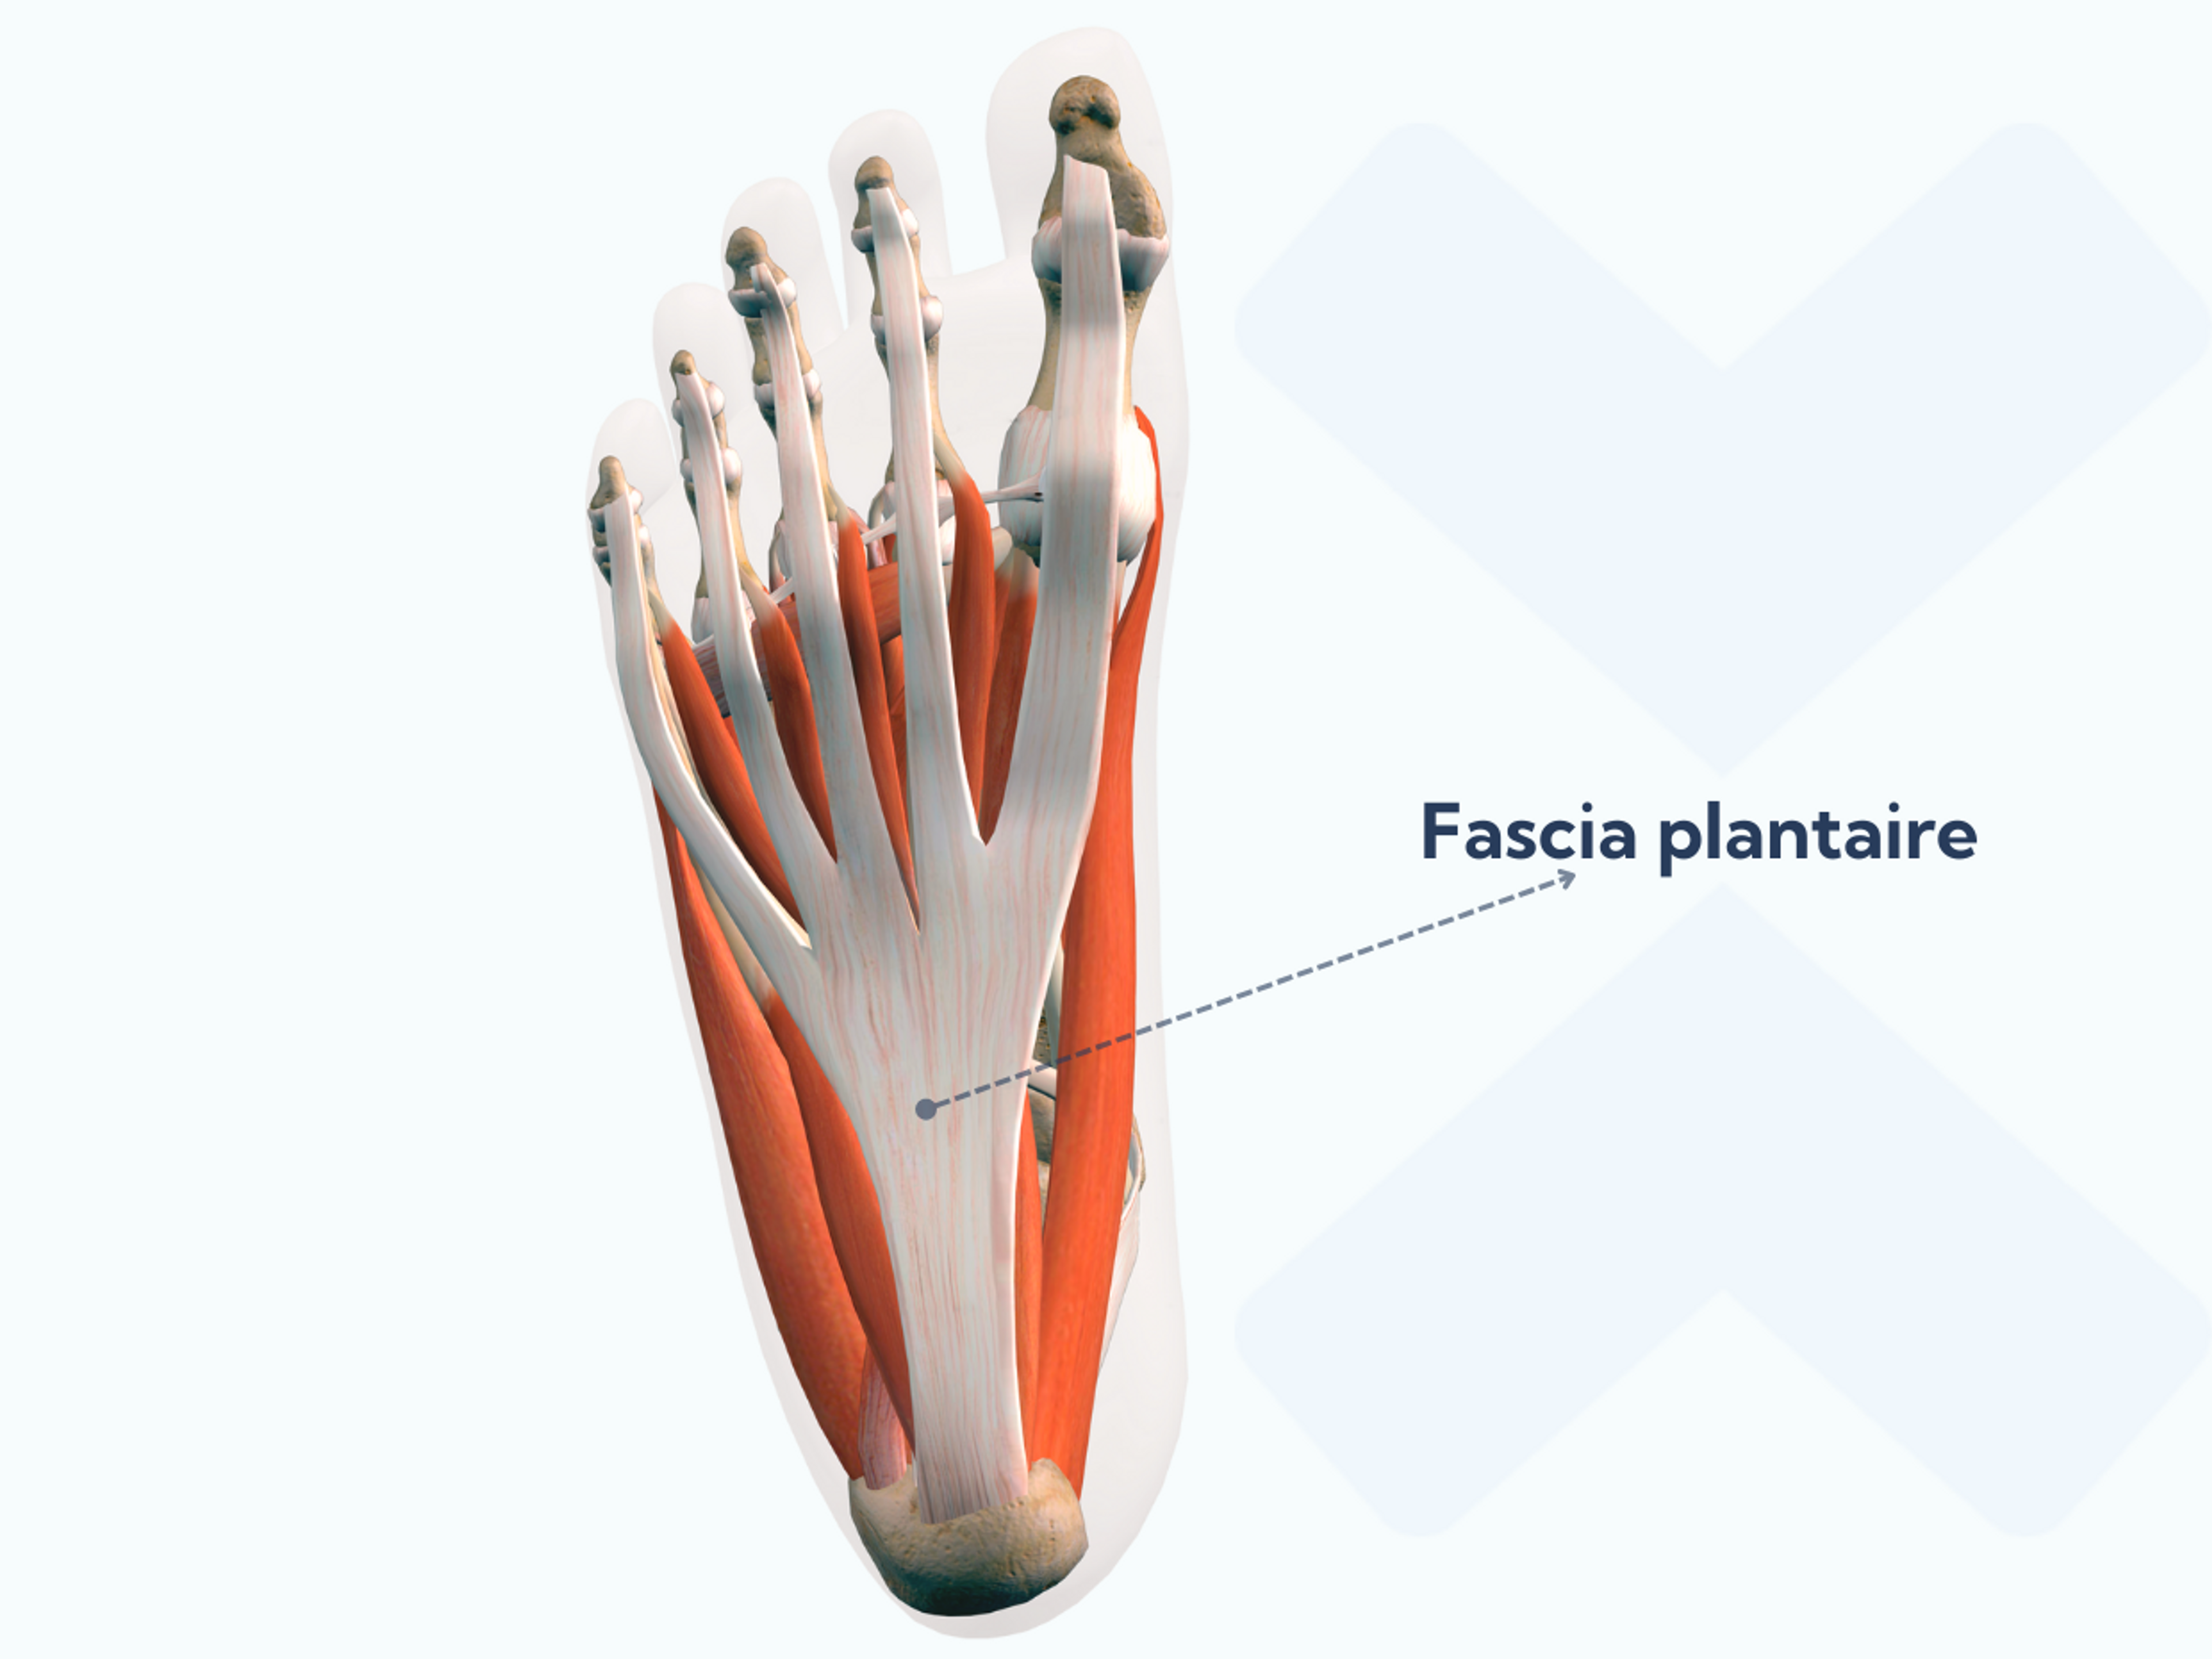 Anatomie du fascia plantaire